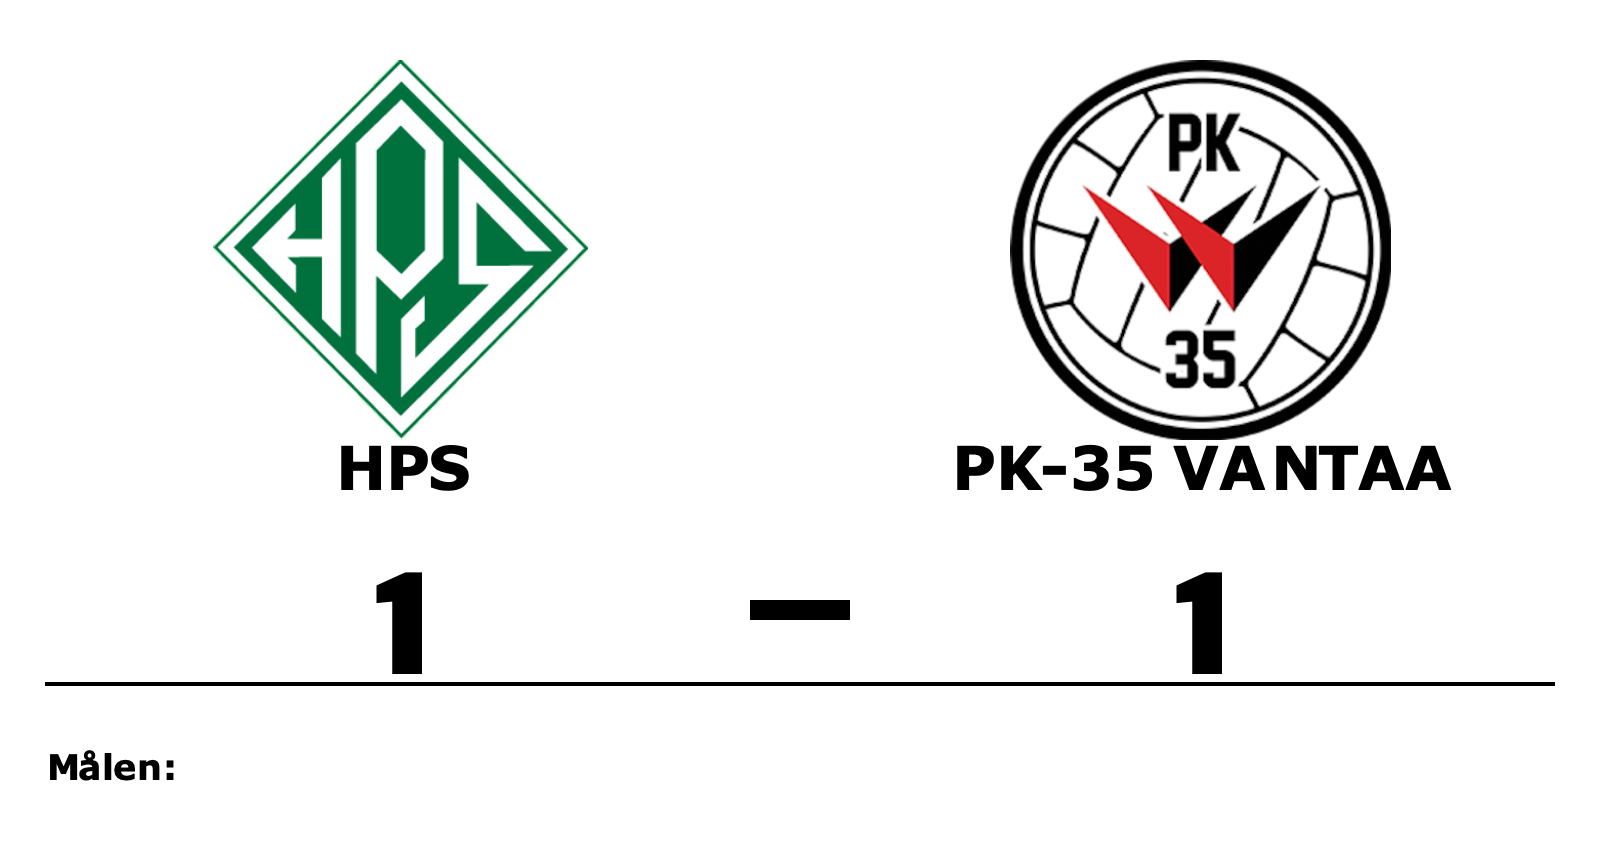 HPS spelade lika mot PK-35 Vantaa